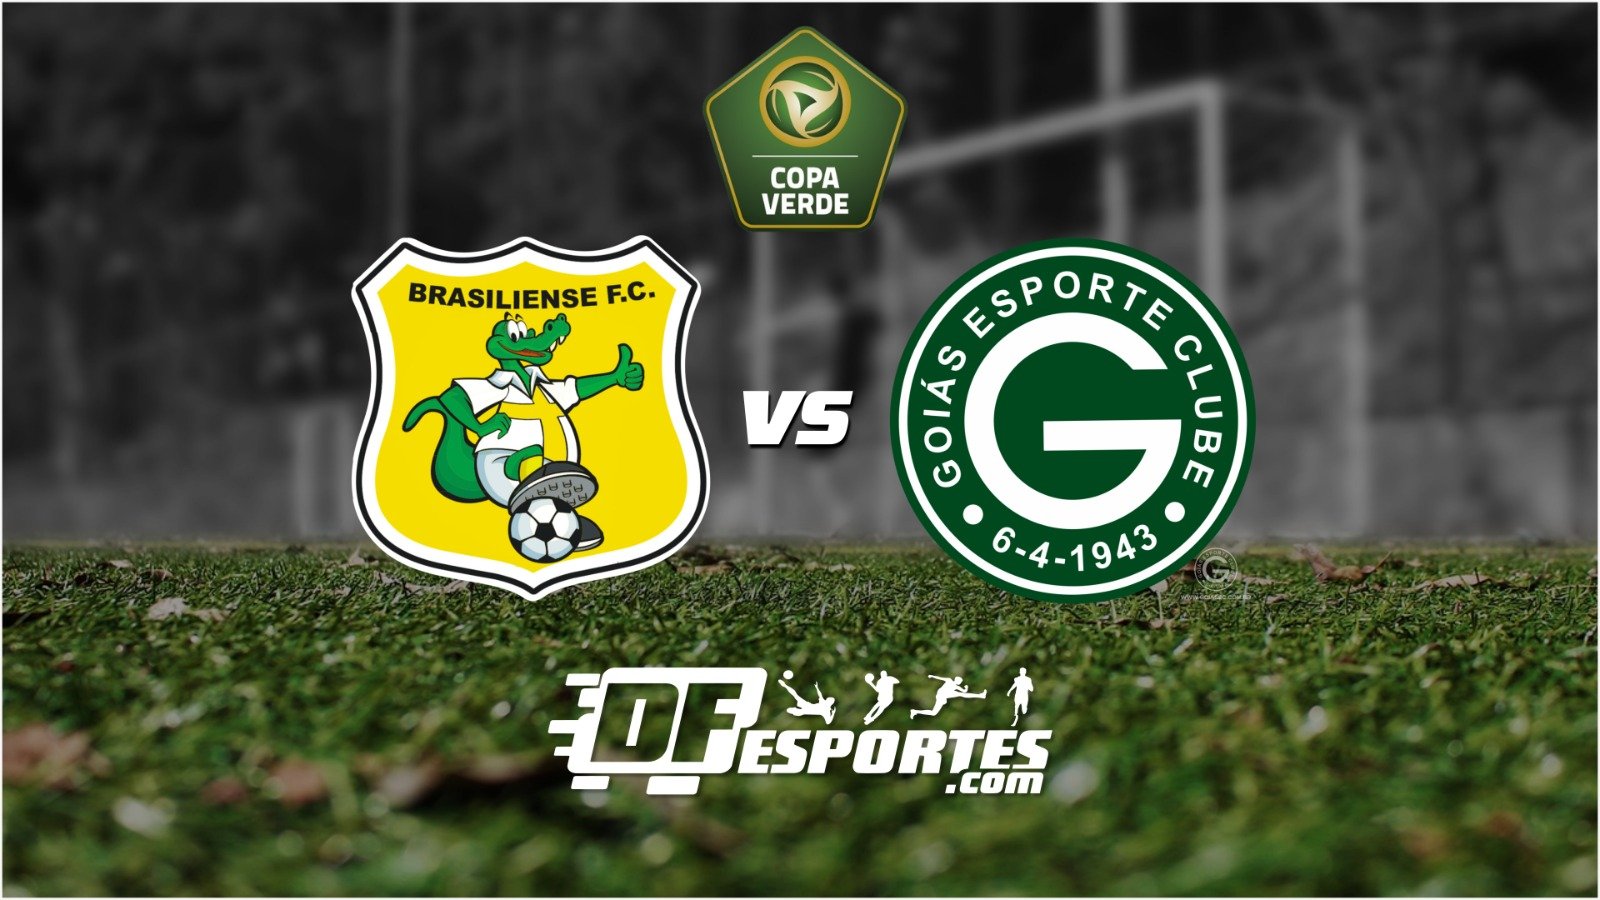 Ainda com portões fechados, Brasiliense recebe Goiás pela Copa Verde